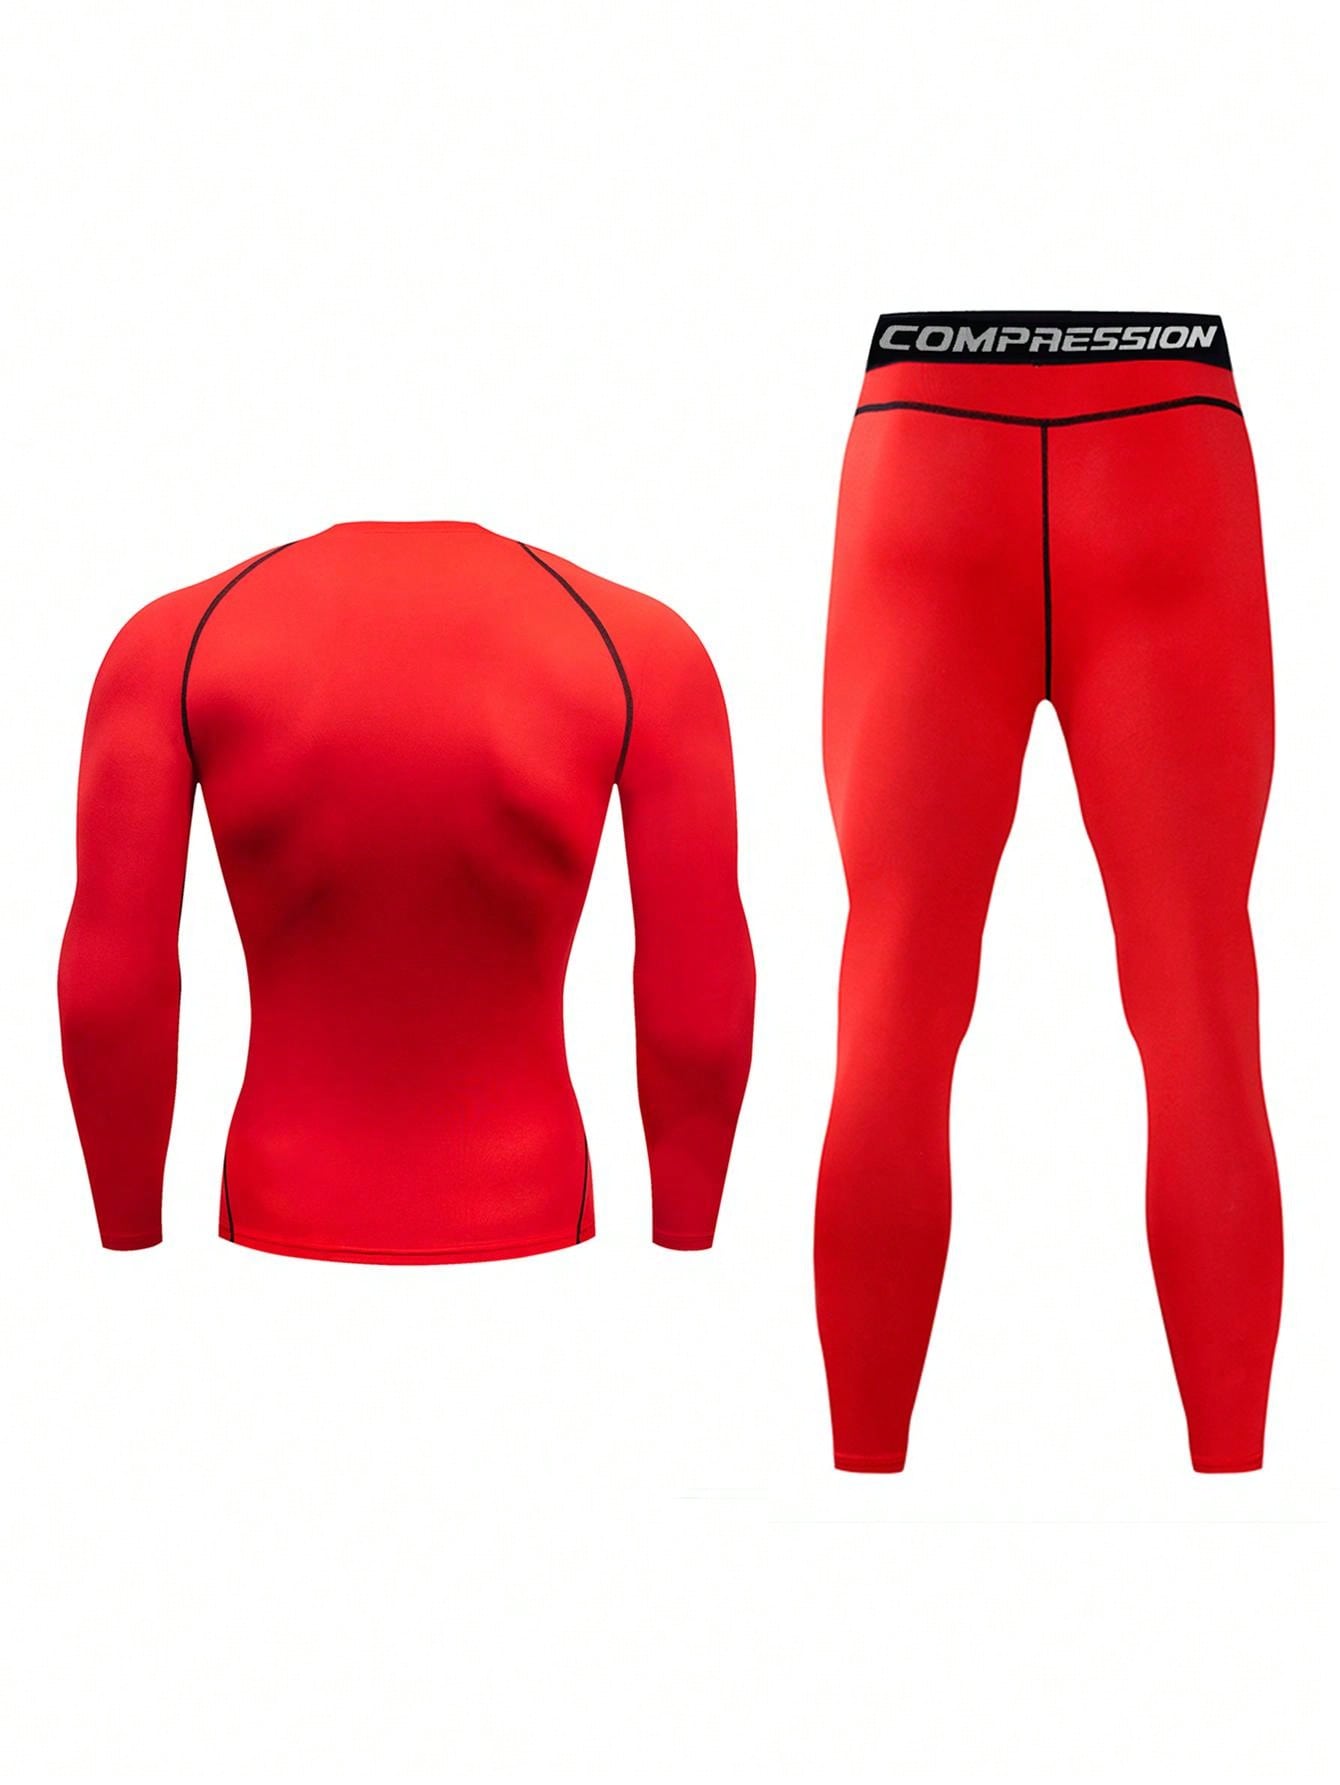 Мужской компрессионный топ с длинными рукавами и длинные брюки для фитнеса и бега, красный женский топ для йоги эластичный свободный с длинными рукавами спортивный топ женская дышащая футболка для фитнеса бега фитнеса йоги